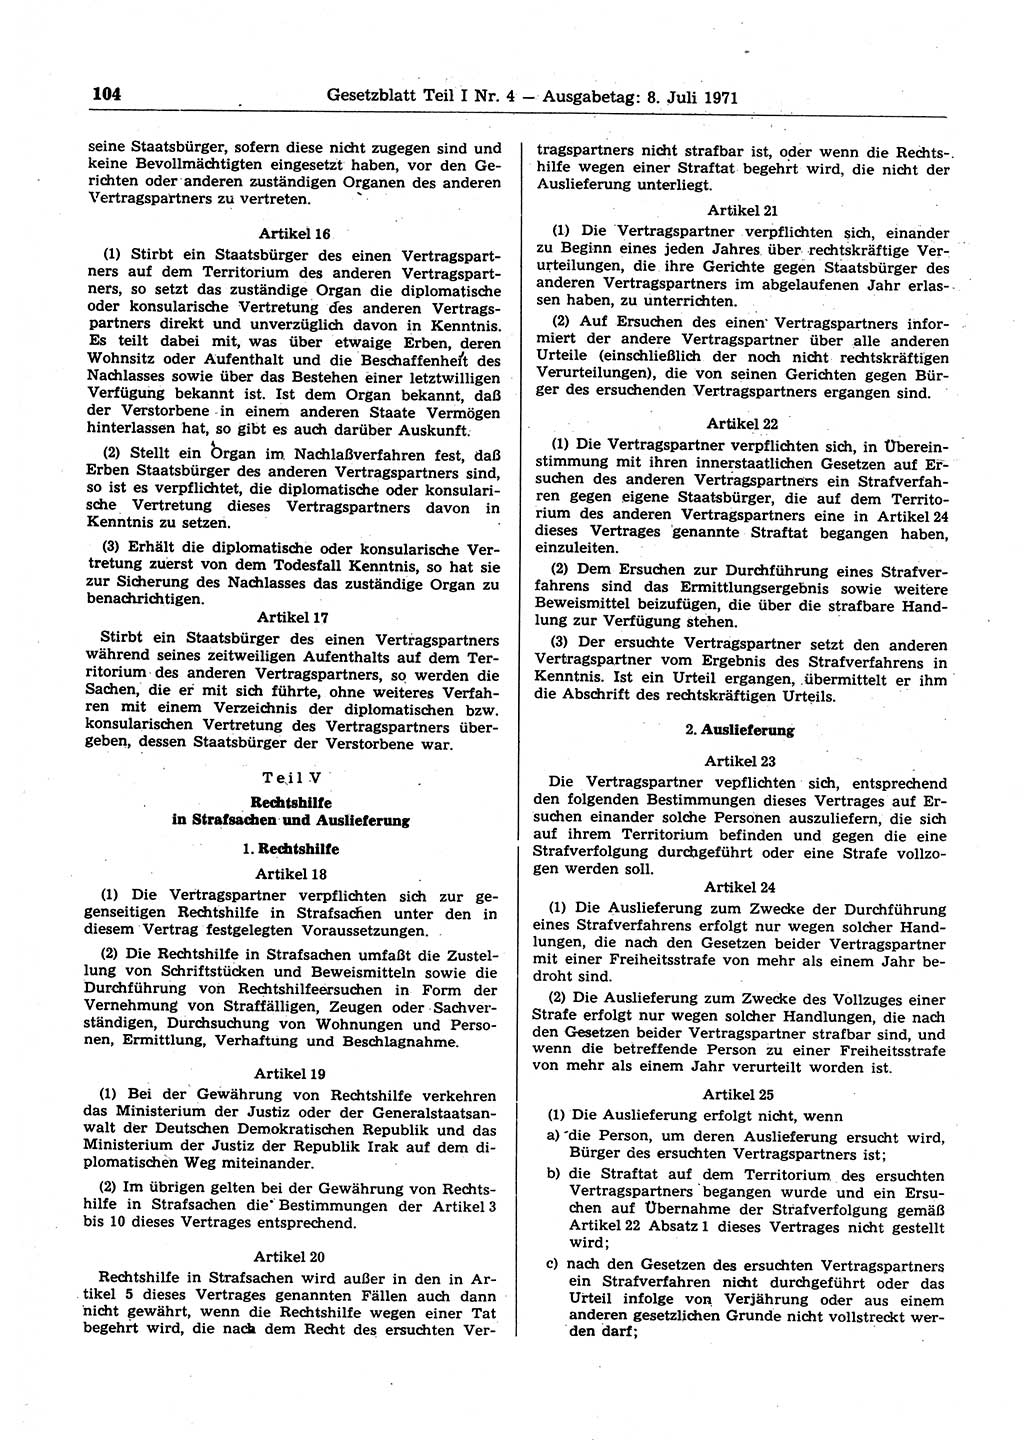 Gesetzblatt (GBl.) der Deutschen Demokratischen Republik (DDR) Teil Ⅰ 1971, Seite 104 (GBl. DDR Ⅰ 1971, S. 104)